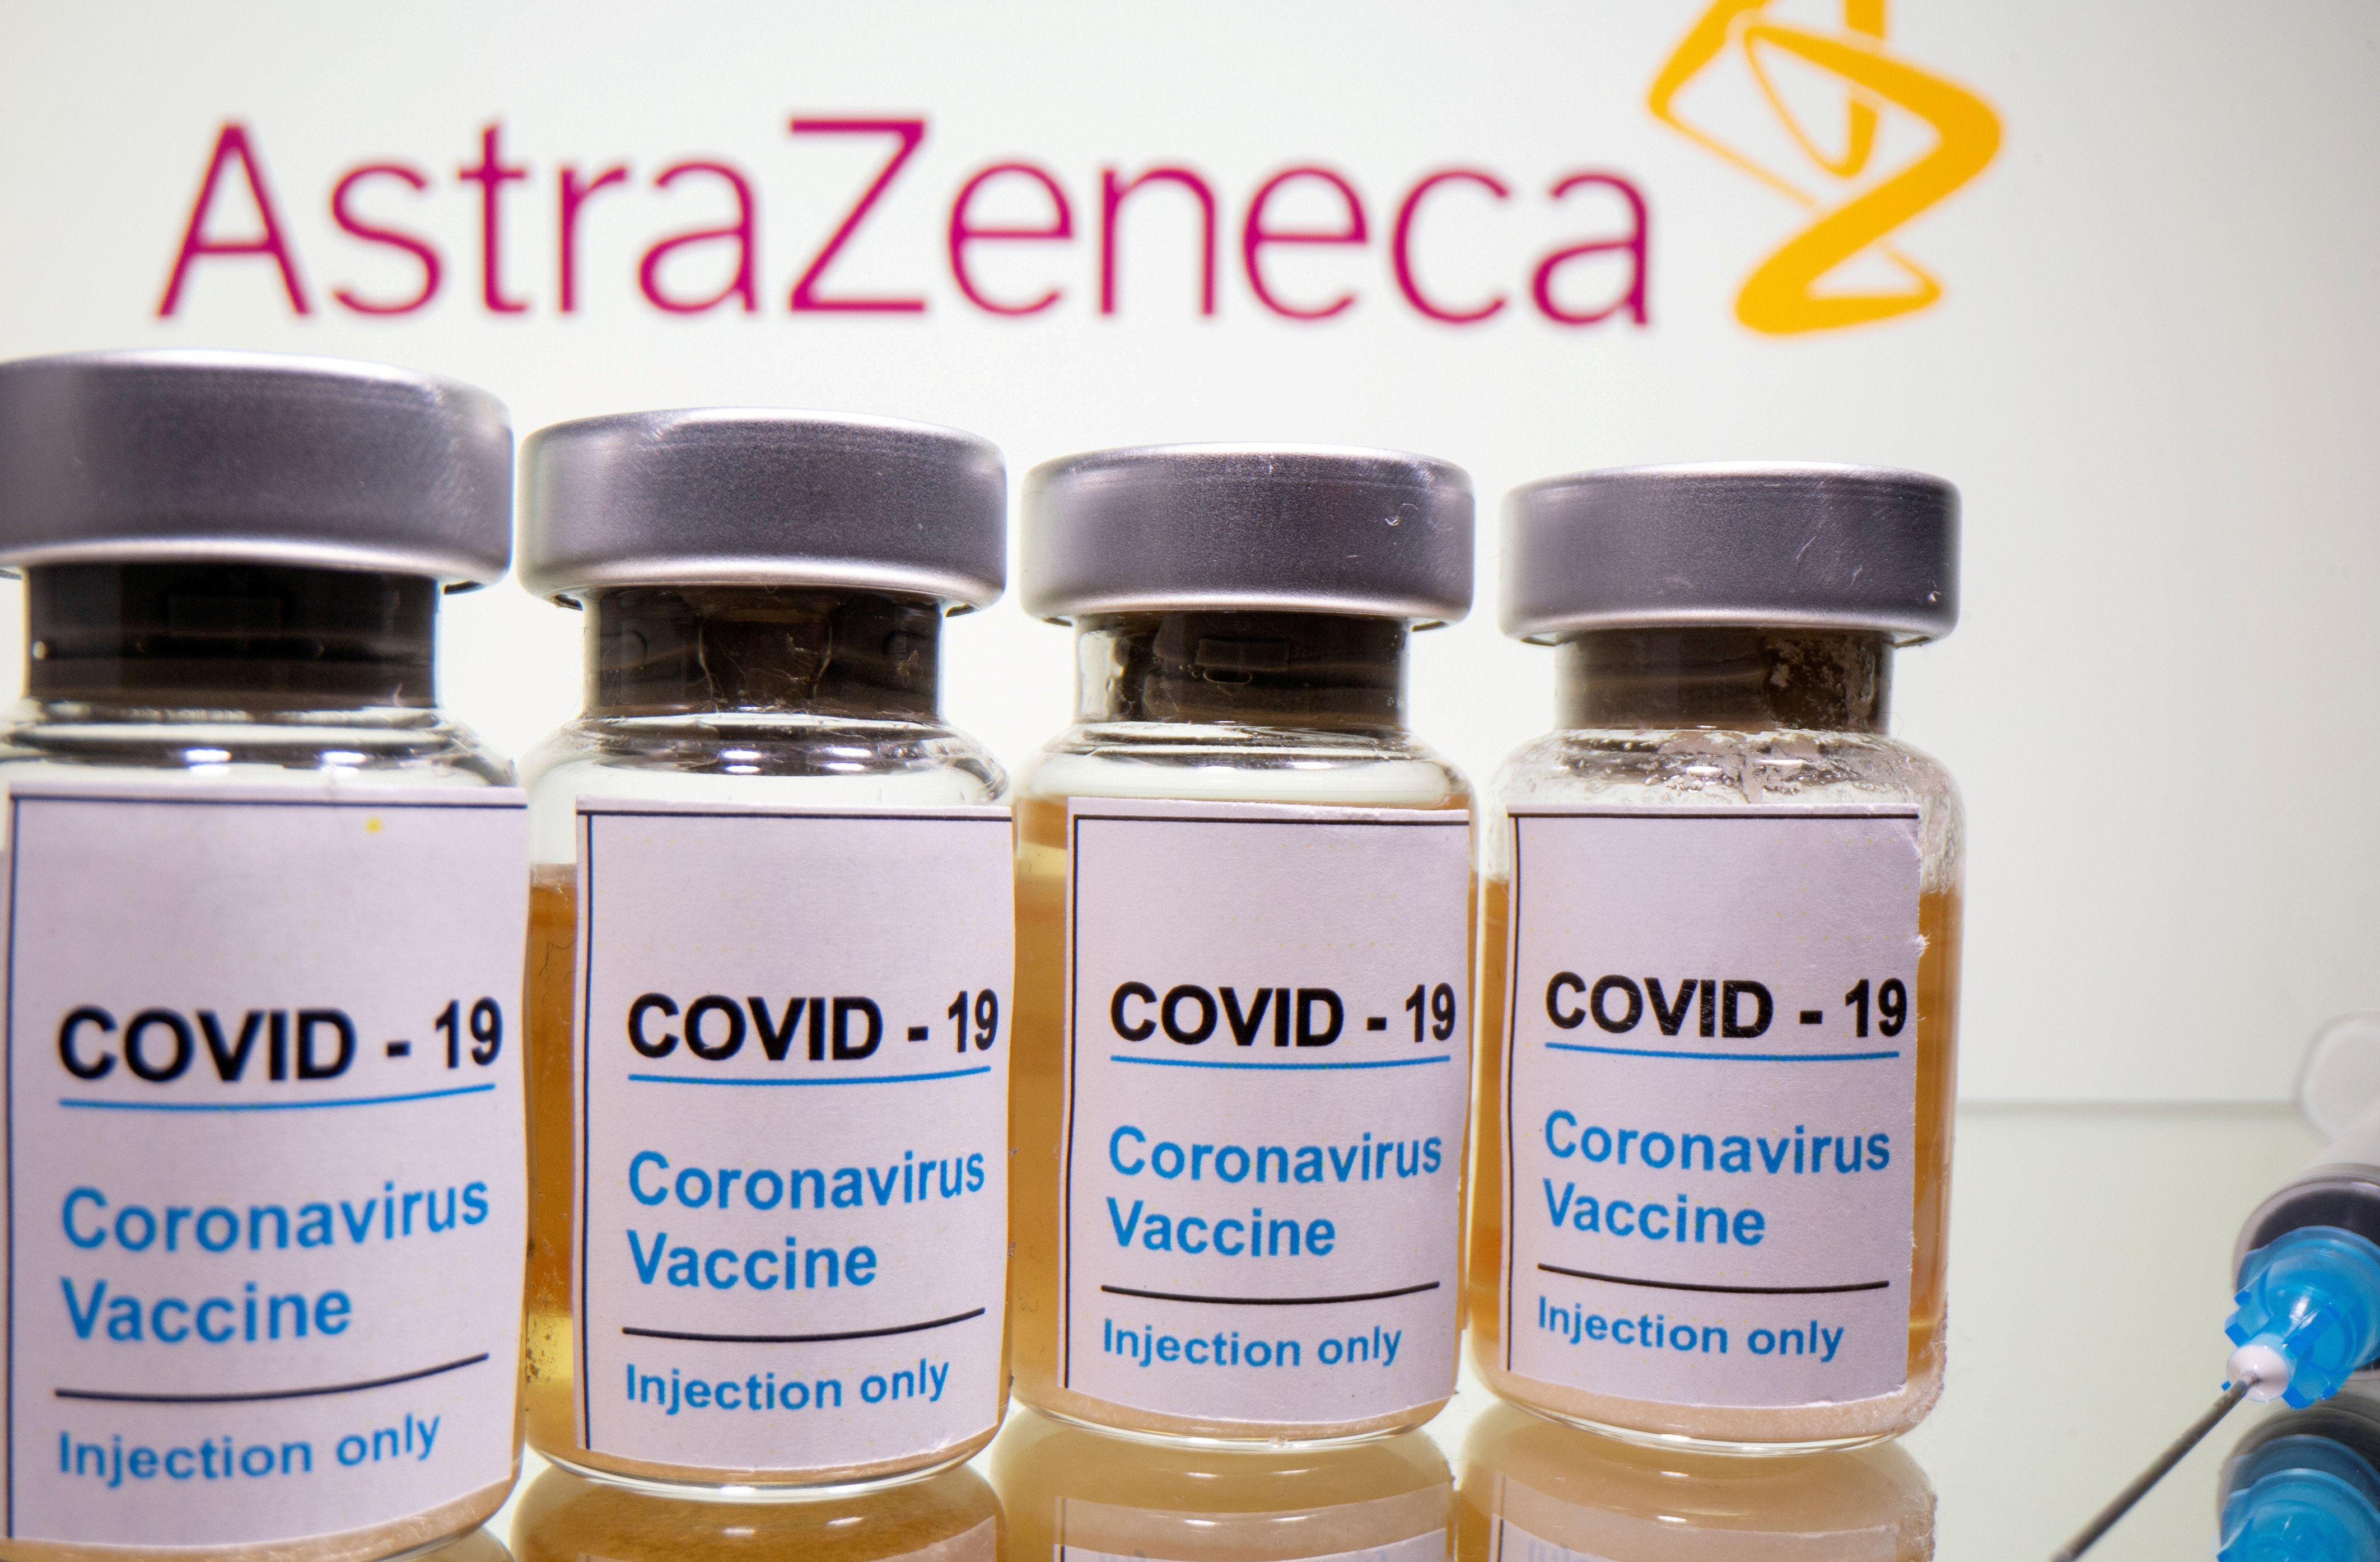 La Comisión Europea autoriza la vacuna de AstraZeneca contra la Covid